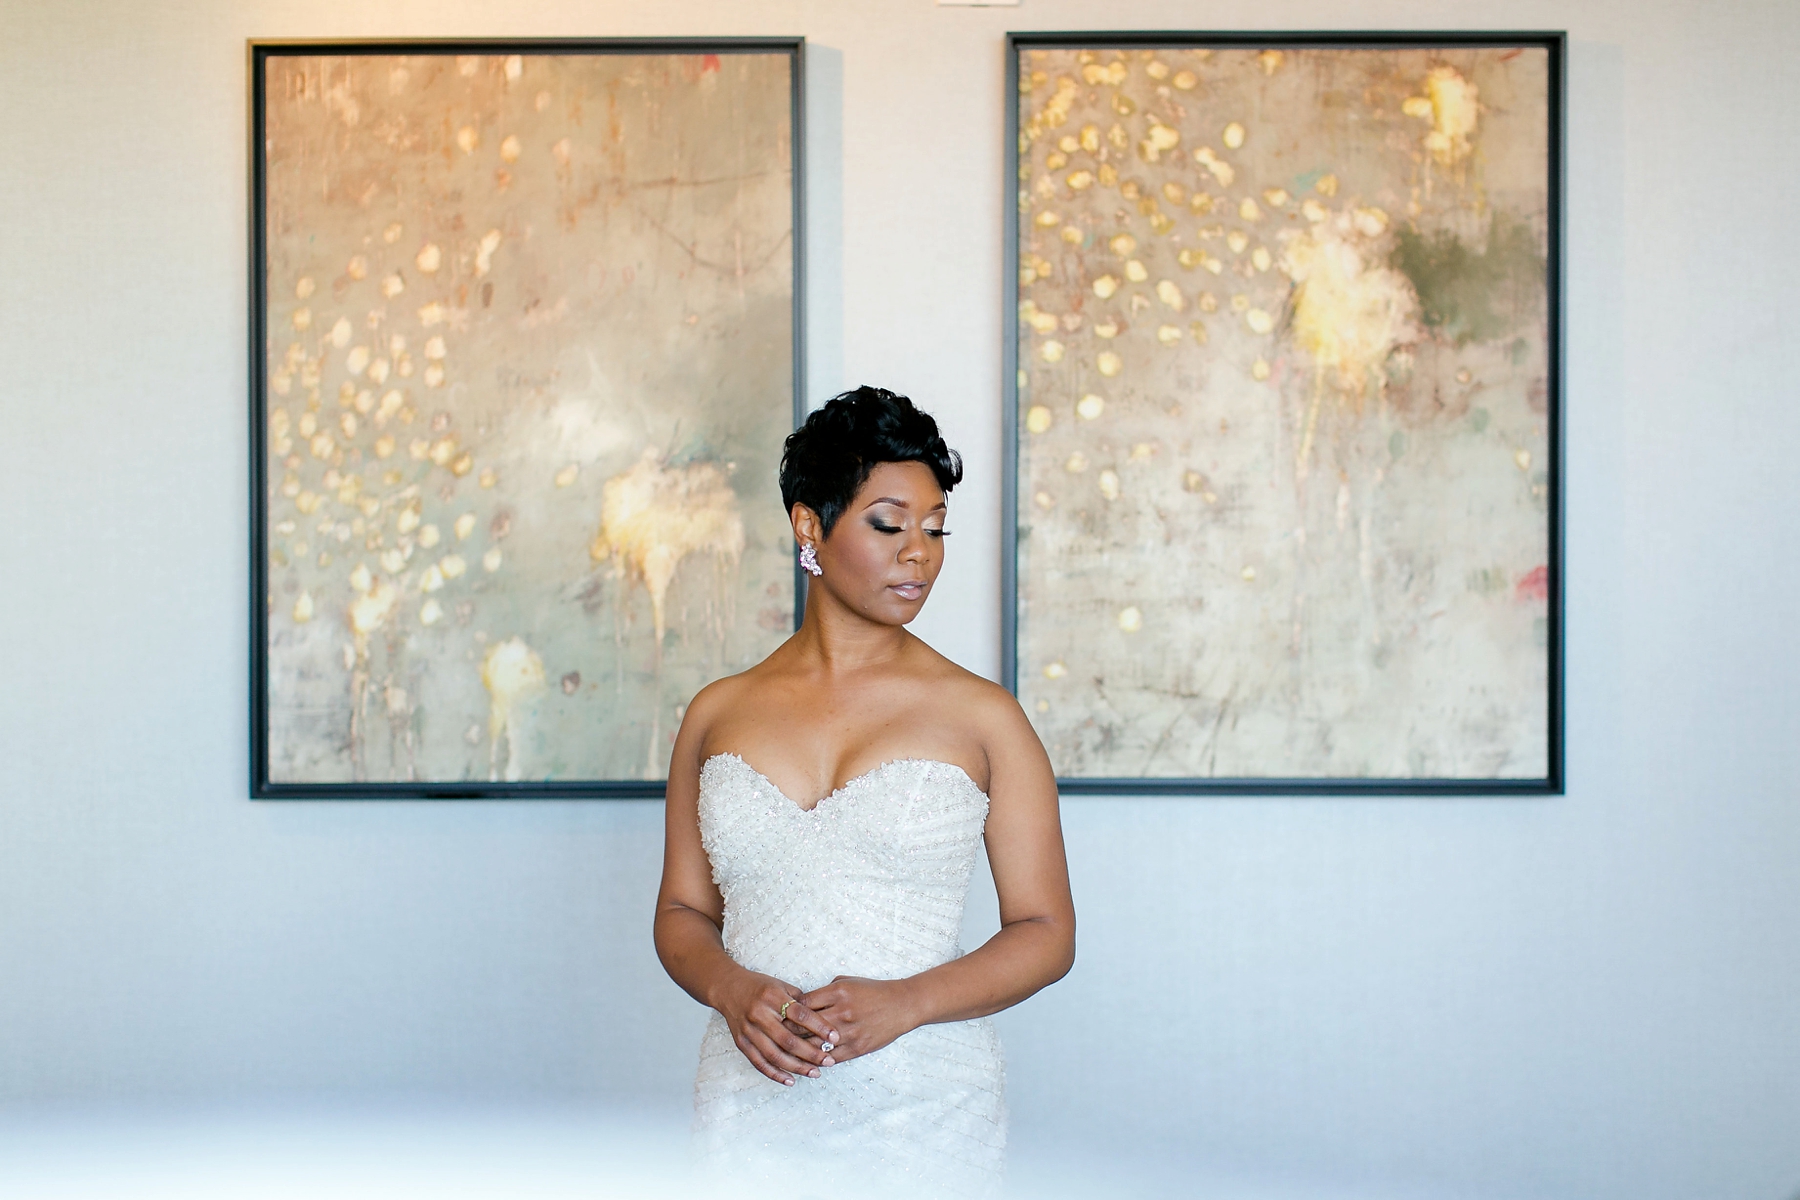 Beautiful bridal portrait by Elle Danielle Photography